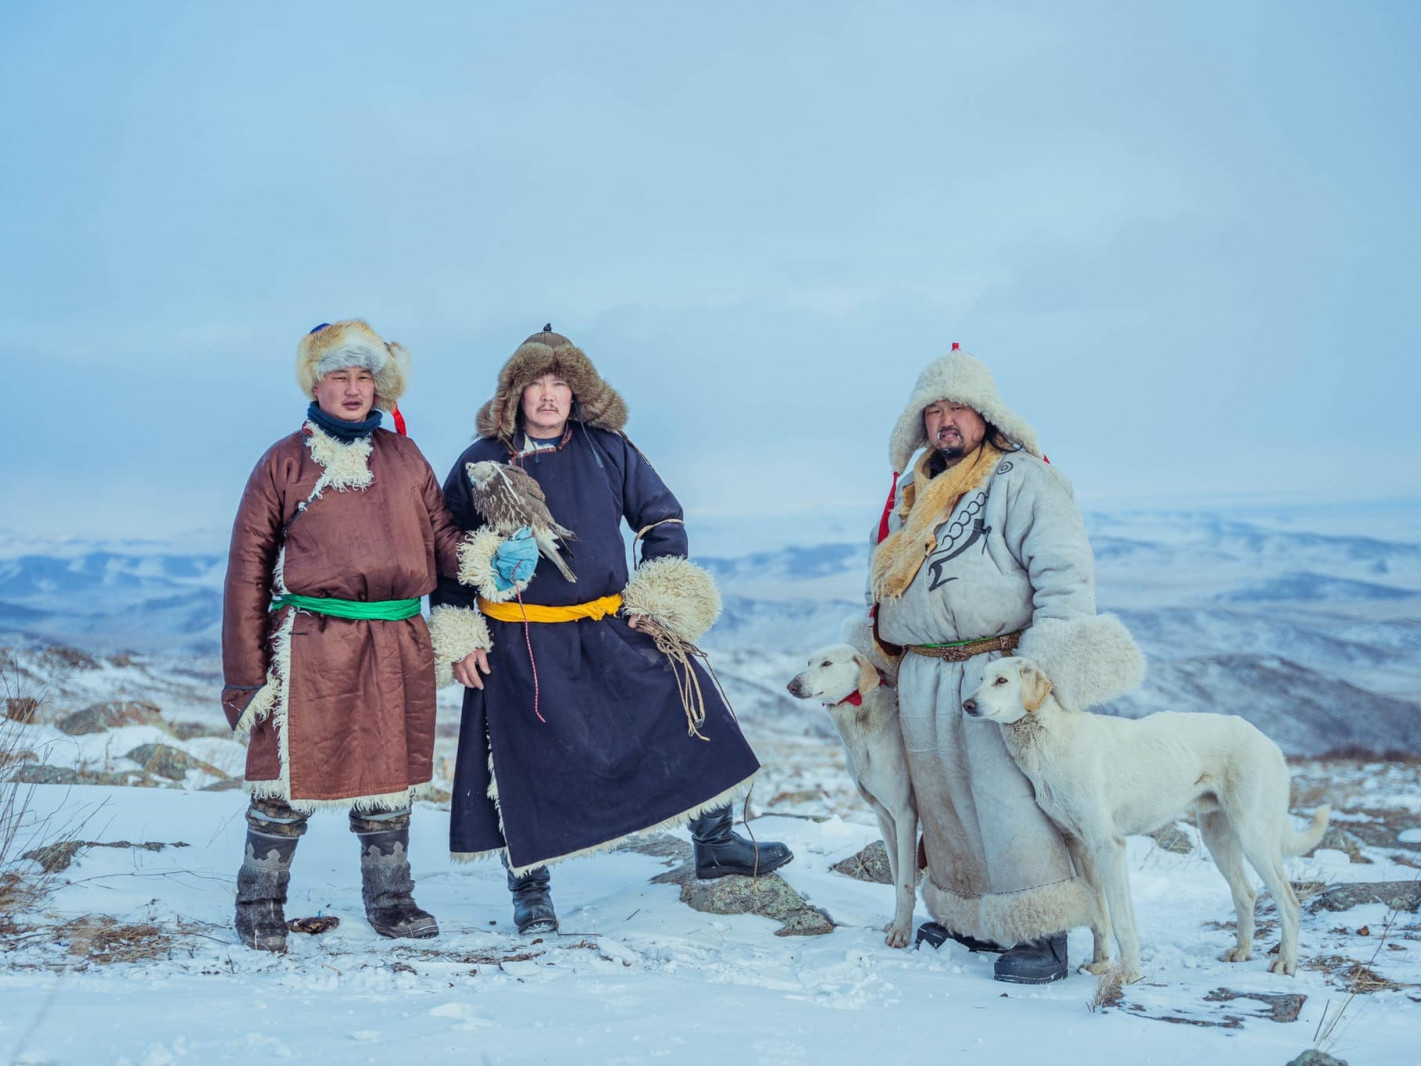 Ар, Өвөр монгол орны аялагчид шонхор шувуу, тайга нохой, морьтой Монгол орныг тойрч байна